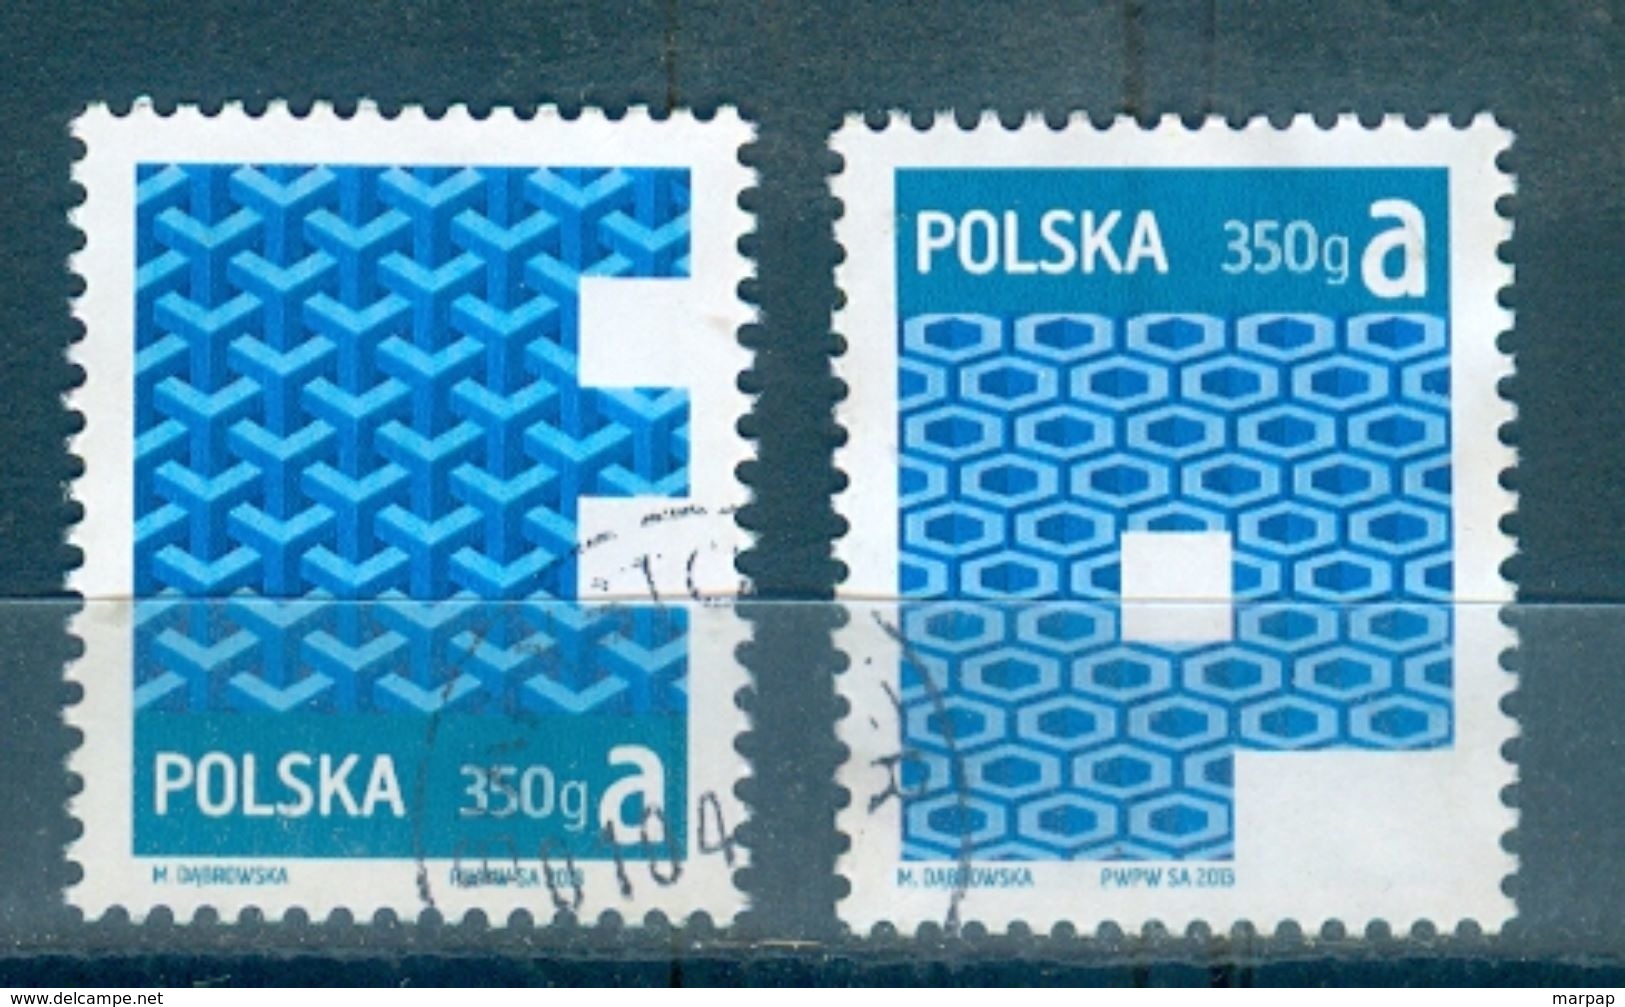 Poland, Yvert No 4301/4302 - Usados